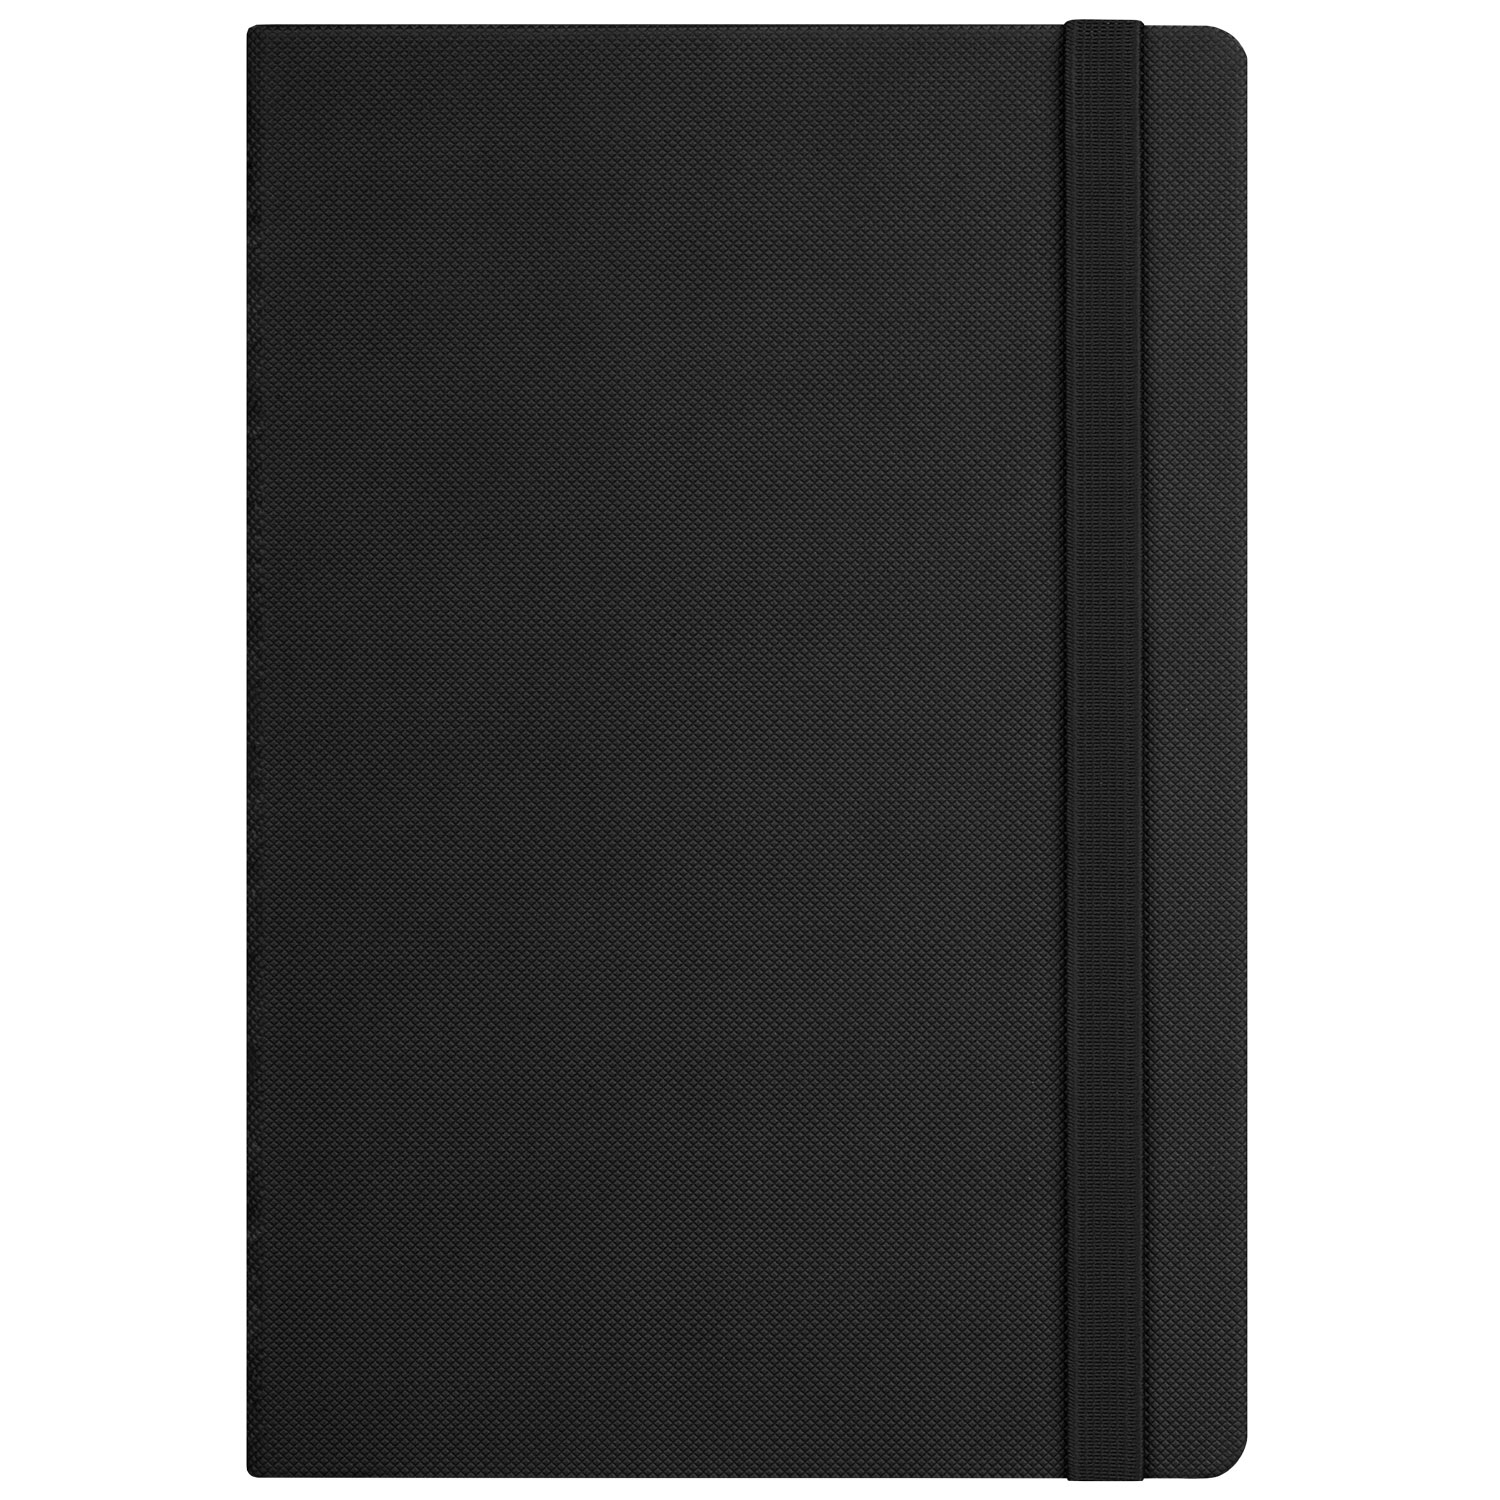 Ежедневник Canyon Btobook недатированный, черный (без упаковки, без стикера)